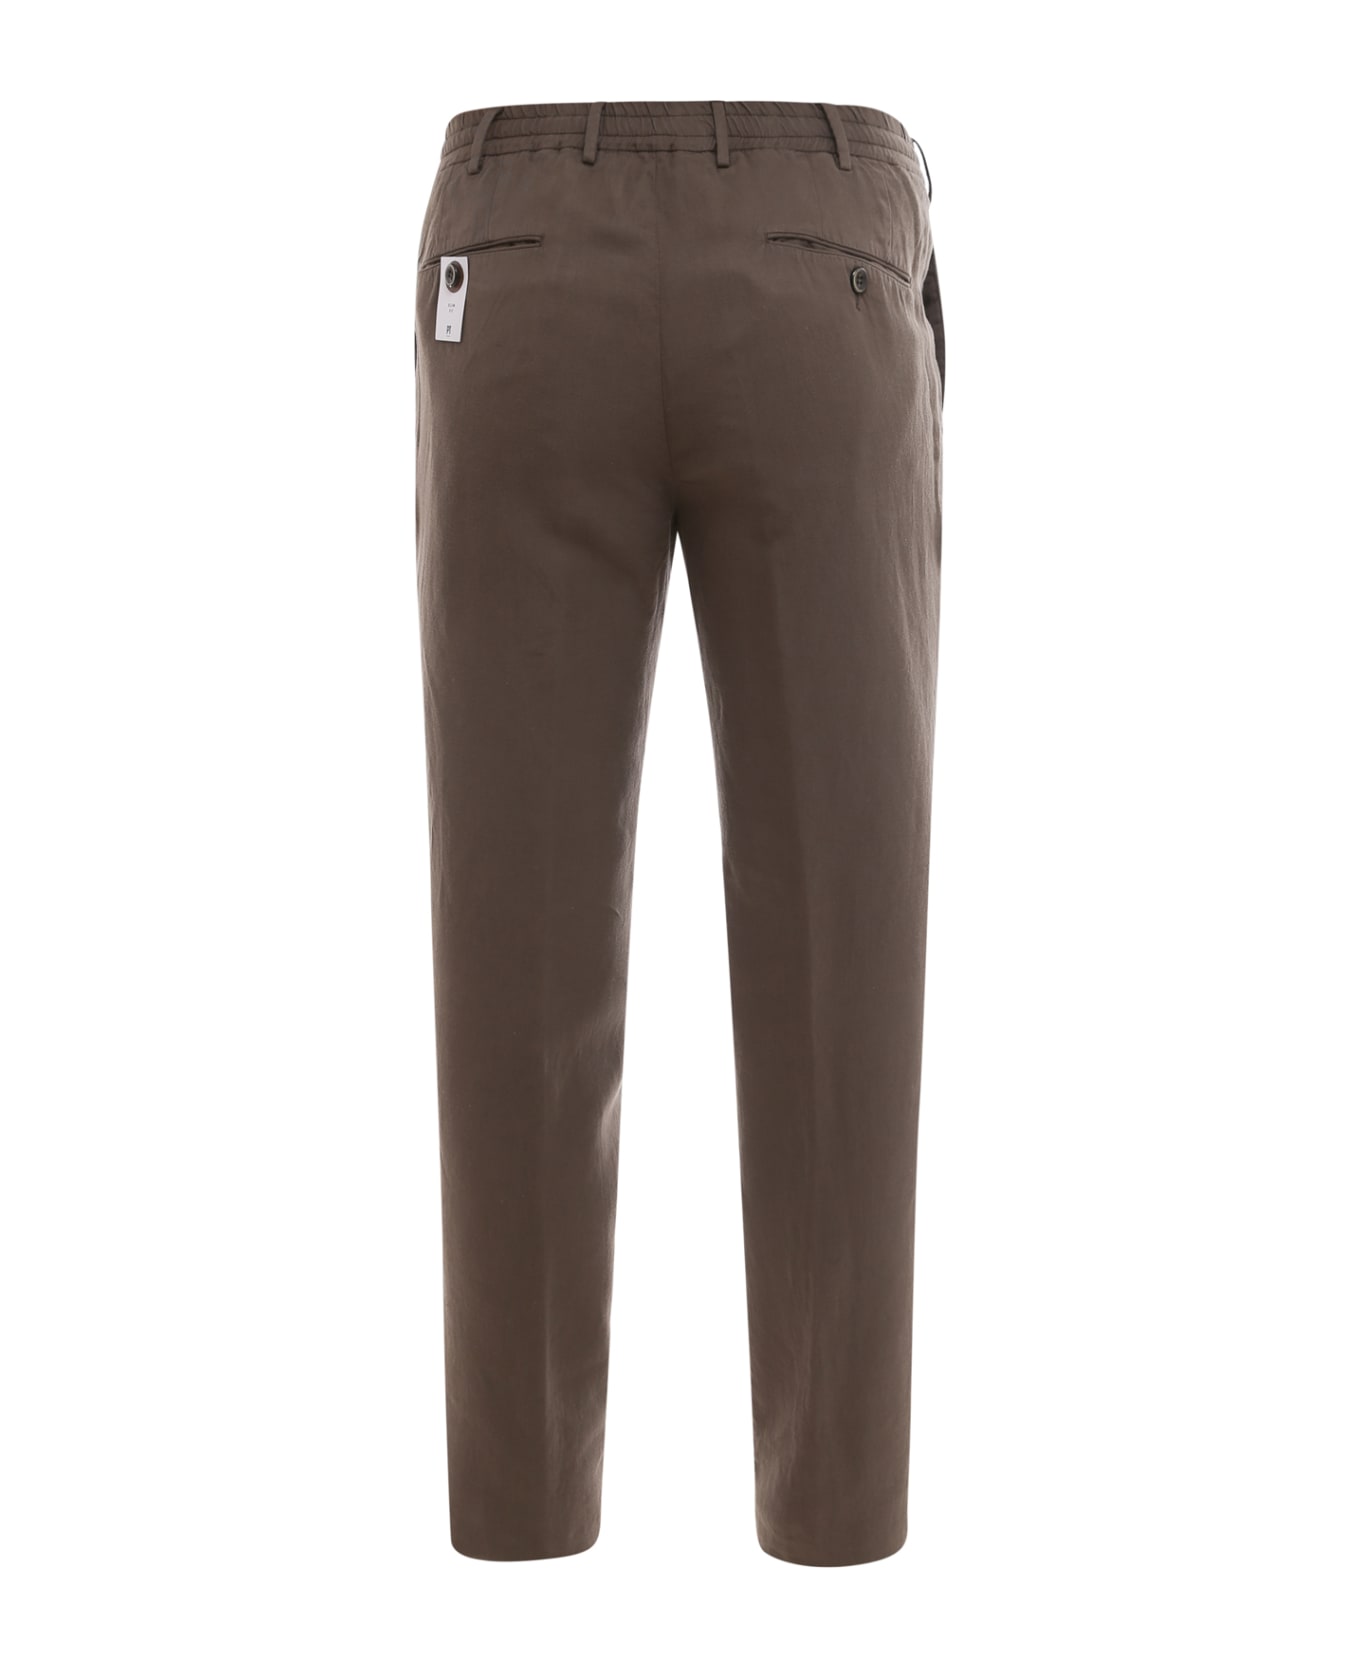 PT Torino Brown Pants - Brown